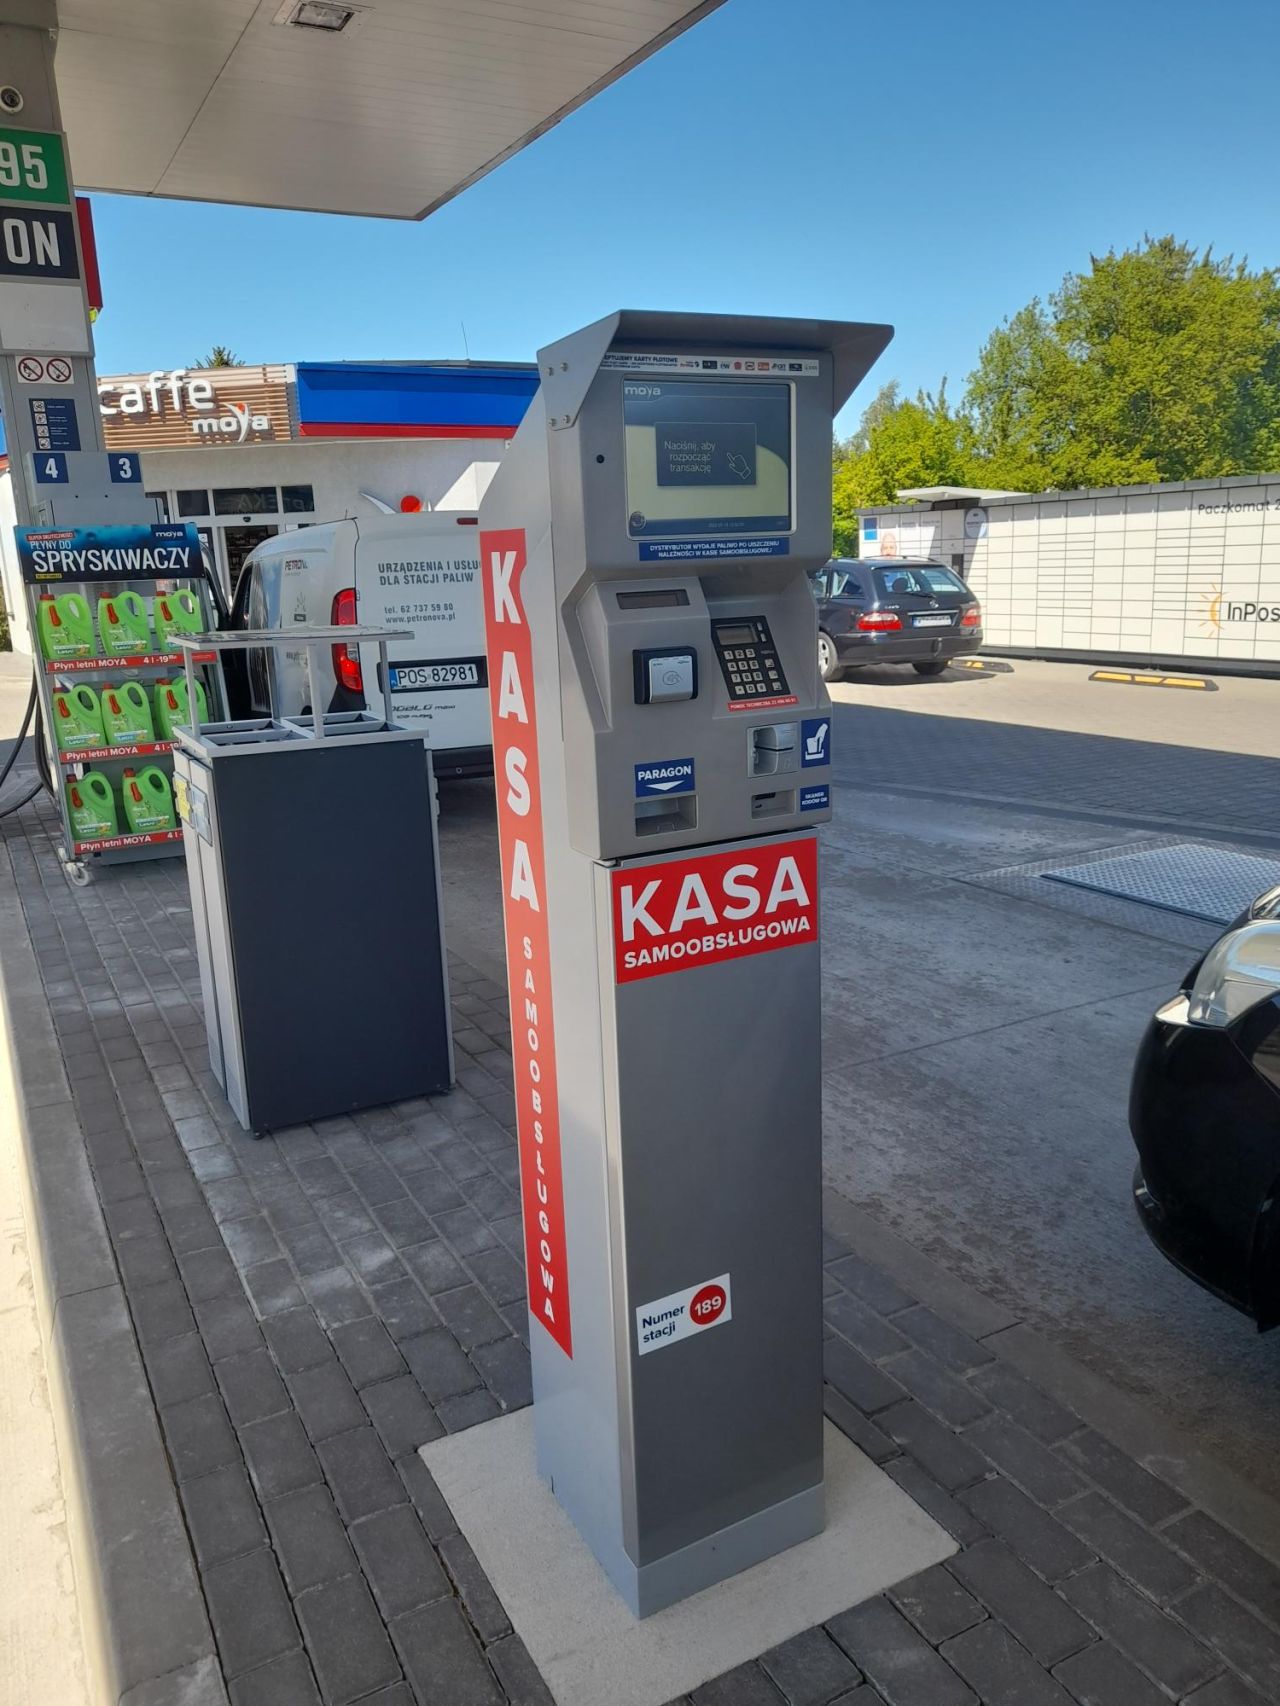 Терминал самообслуживания на АЗС MOYA (Польша) позволяет самостоятельно заправляться и производить оплату непосредственно у топливораздаточной колонке